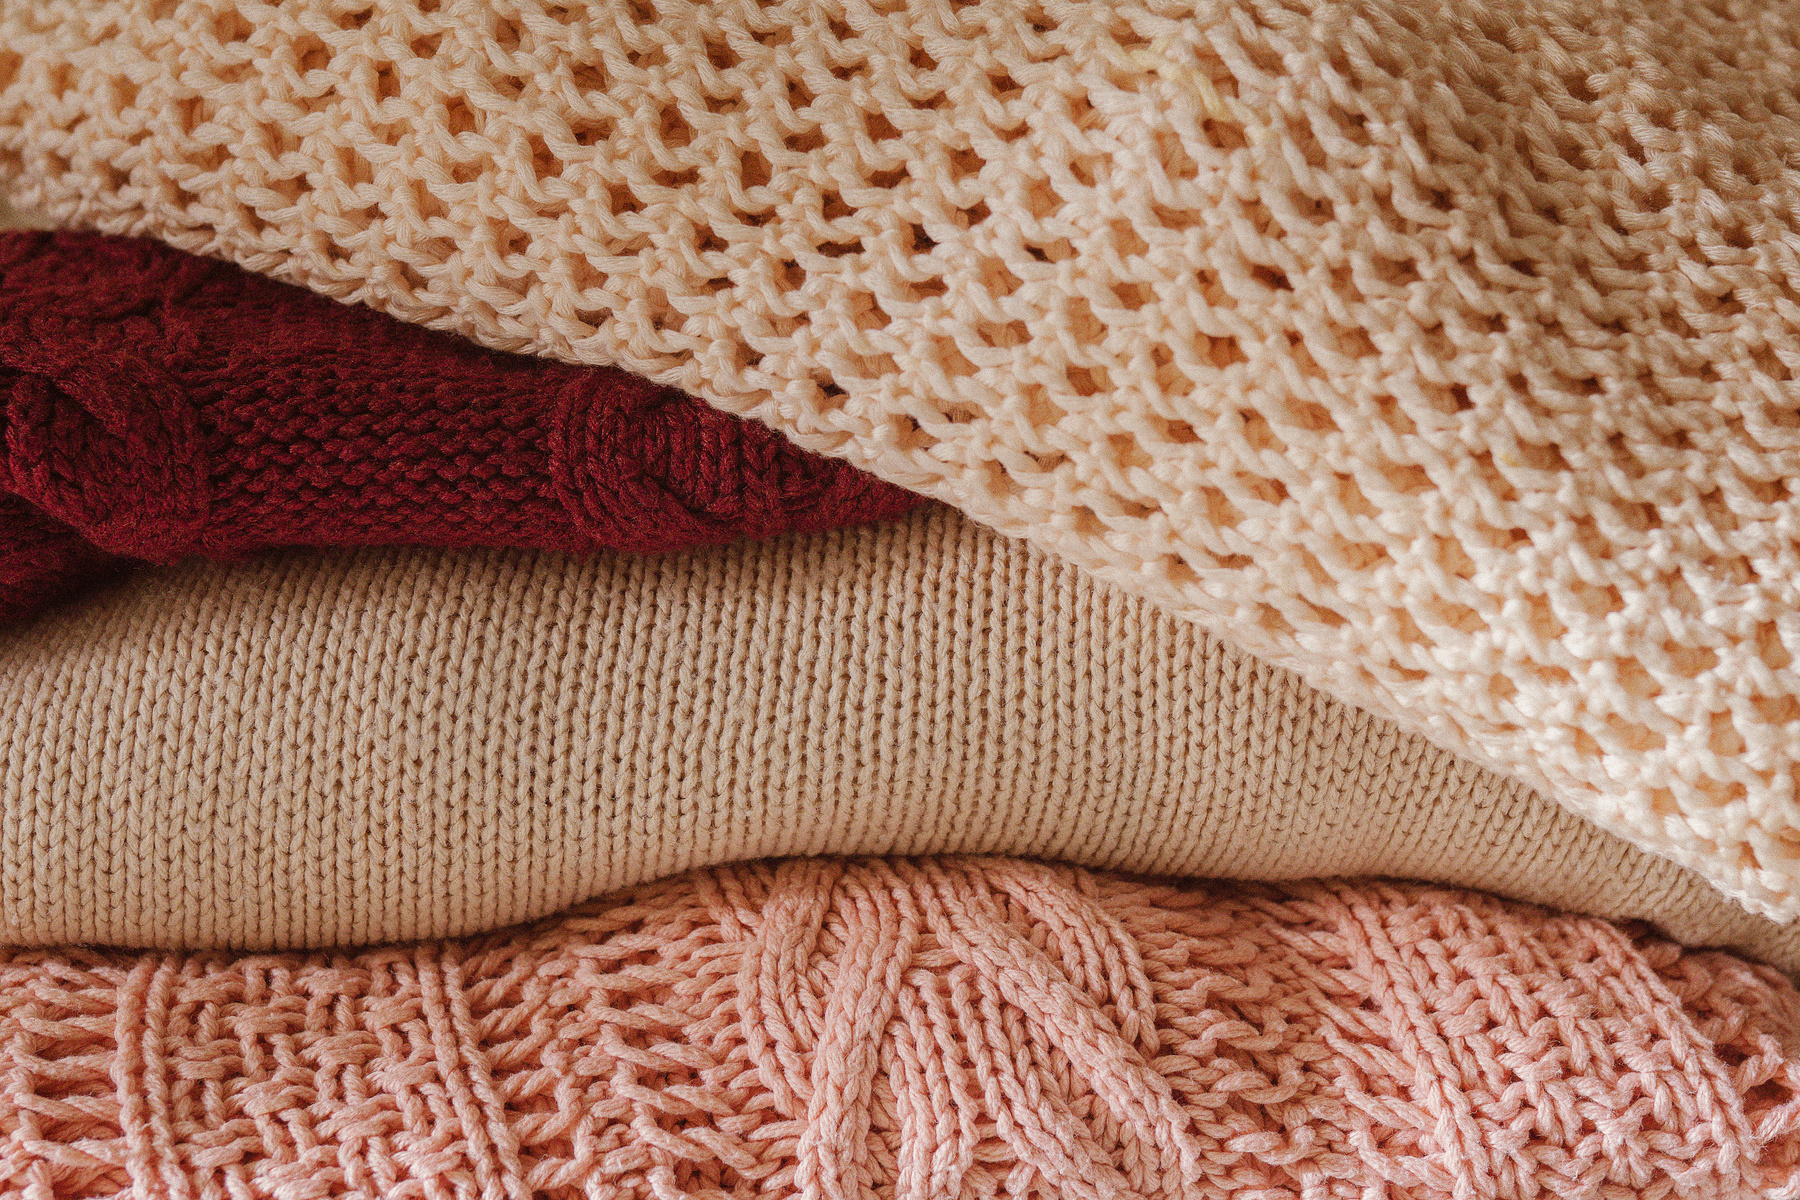 White Knit Textile on Brown Textile